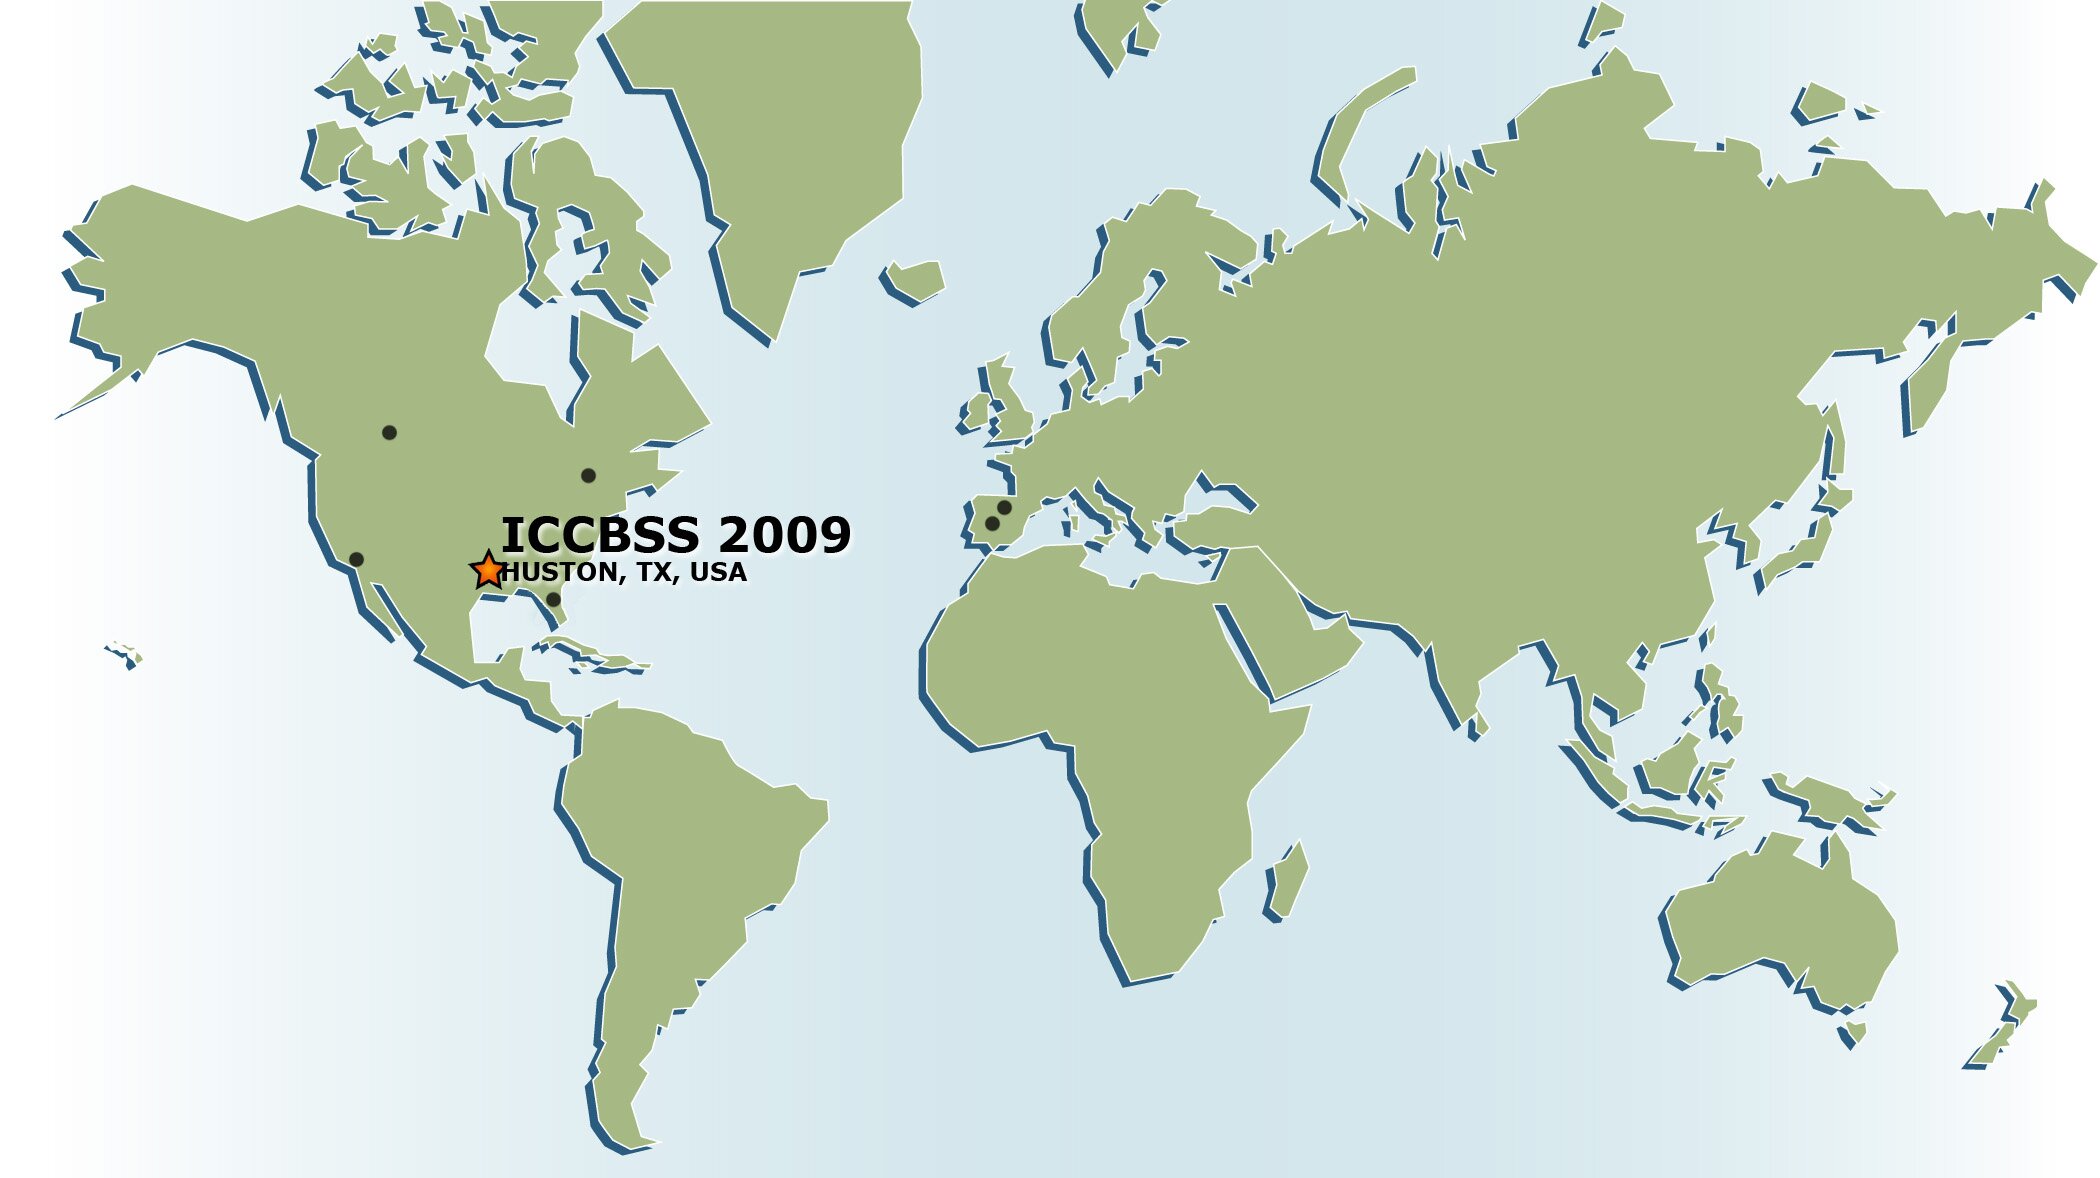 ICCBSS 2009